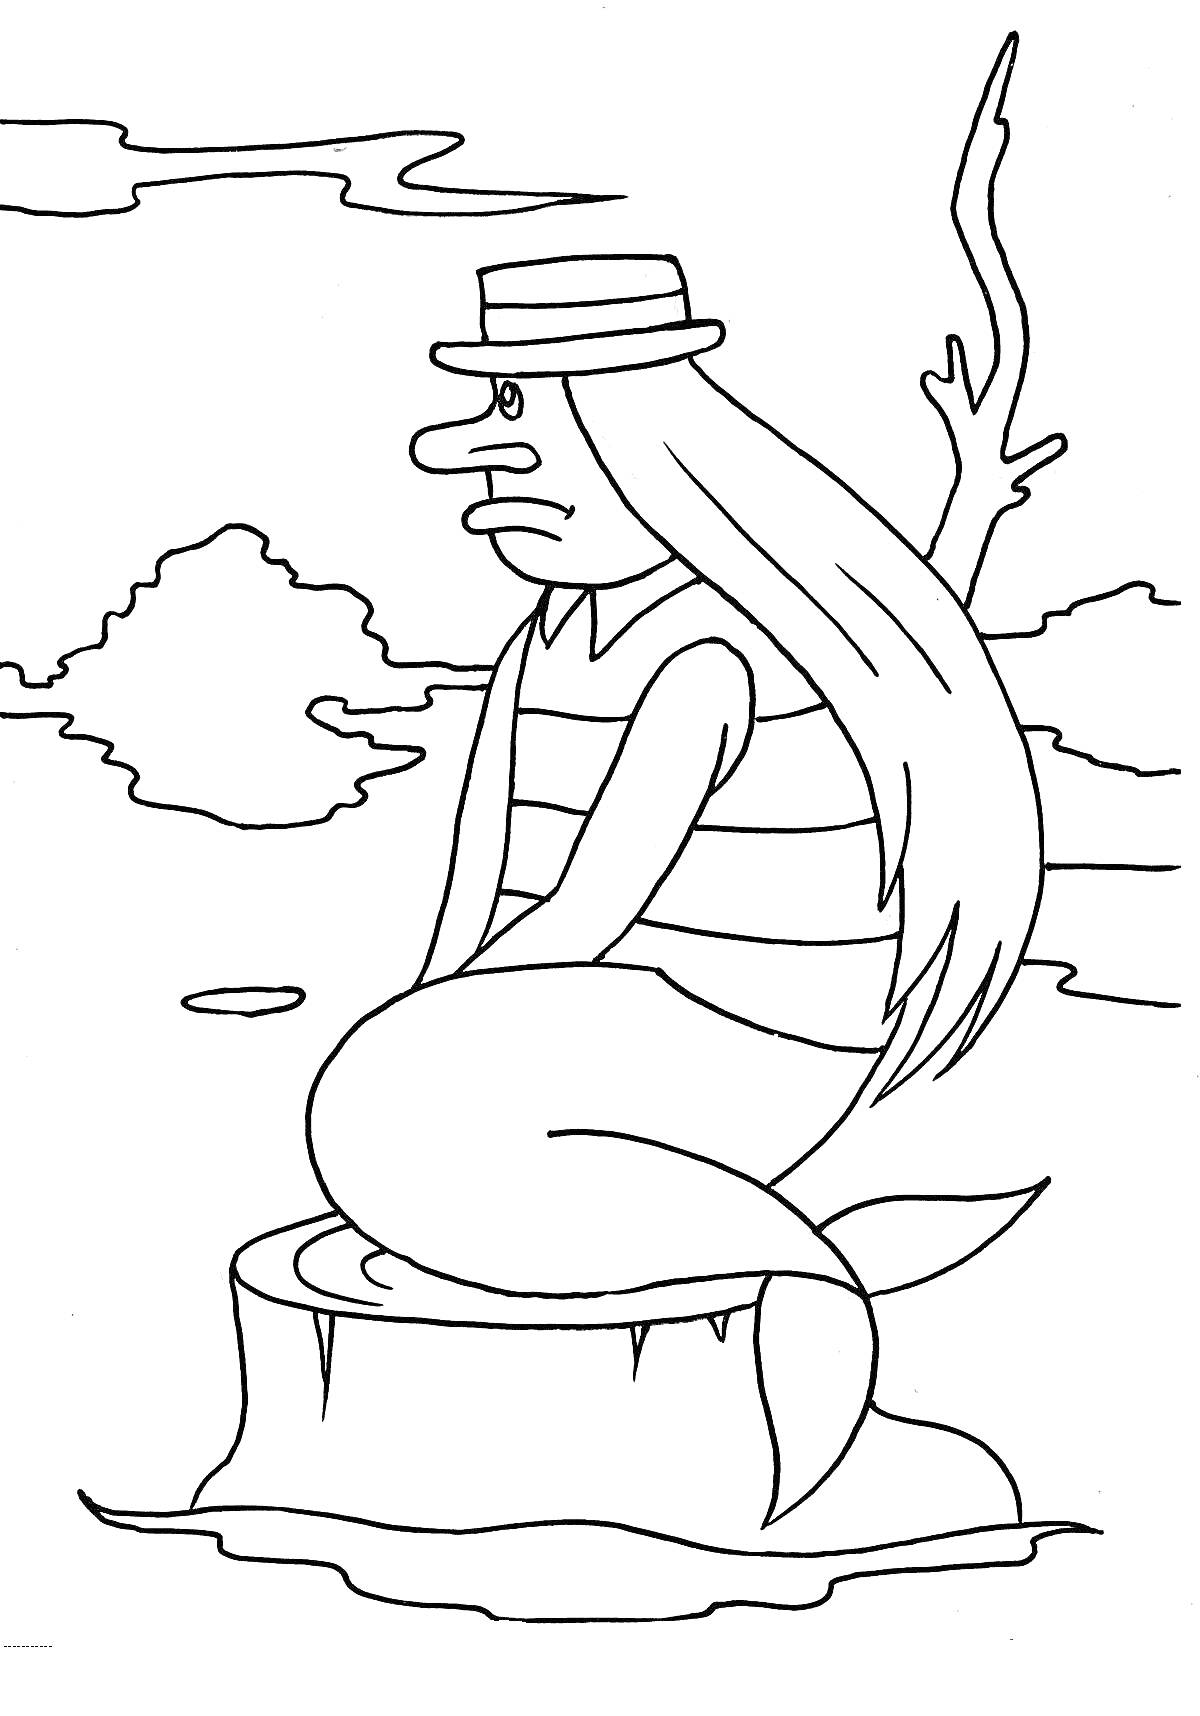 Раскраска Русалка в шляпе, сидящая на пне на фоне природы